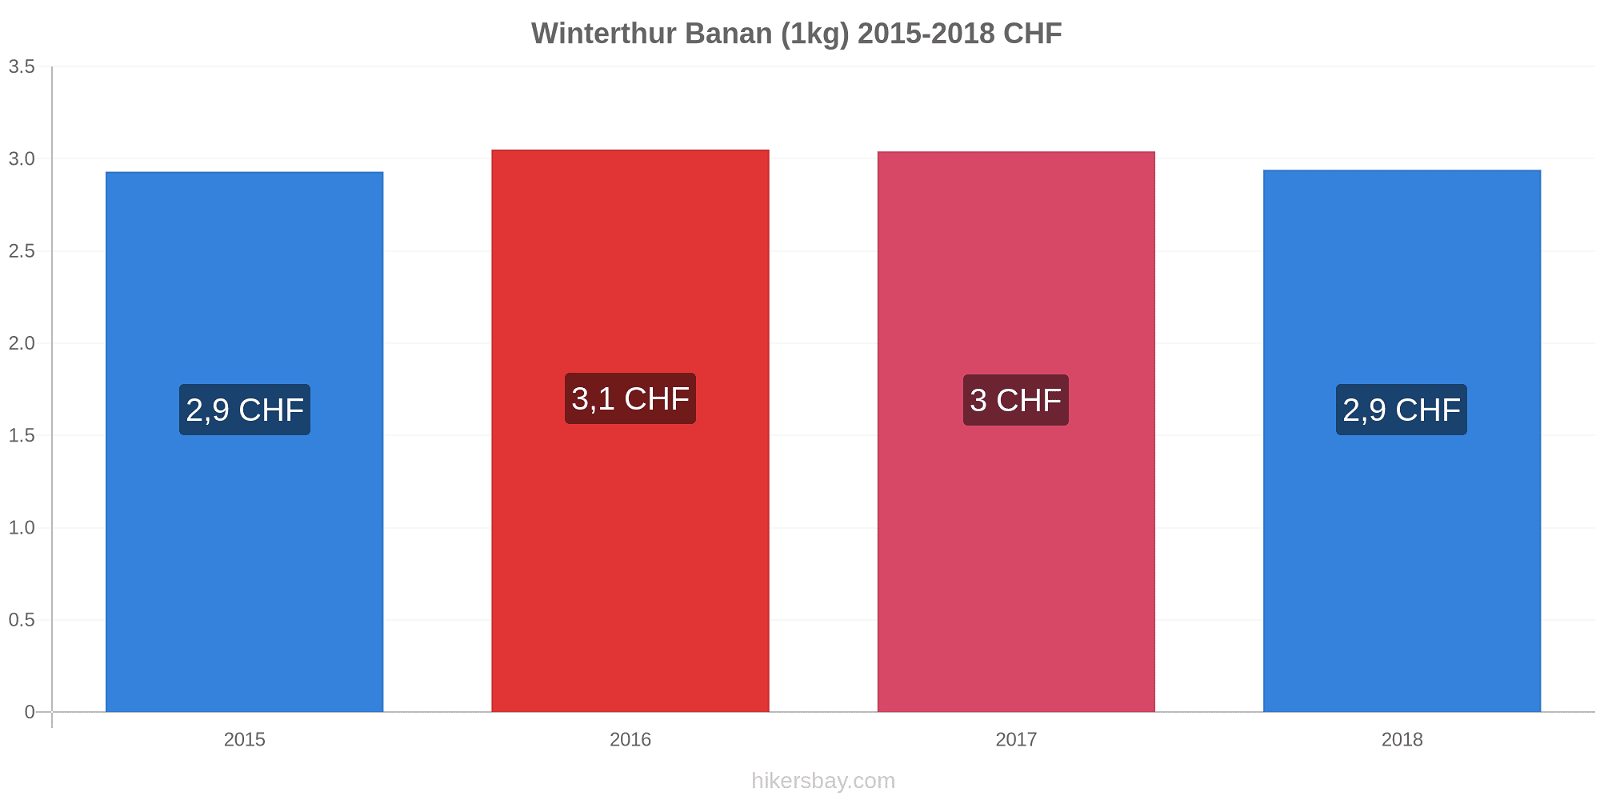 Winterthur prisændringer Banan (1kg) hikersbay.com